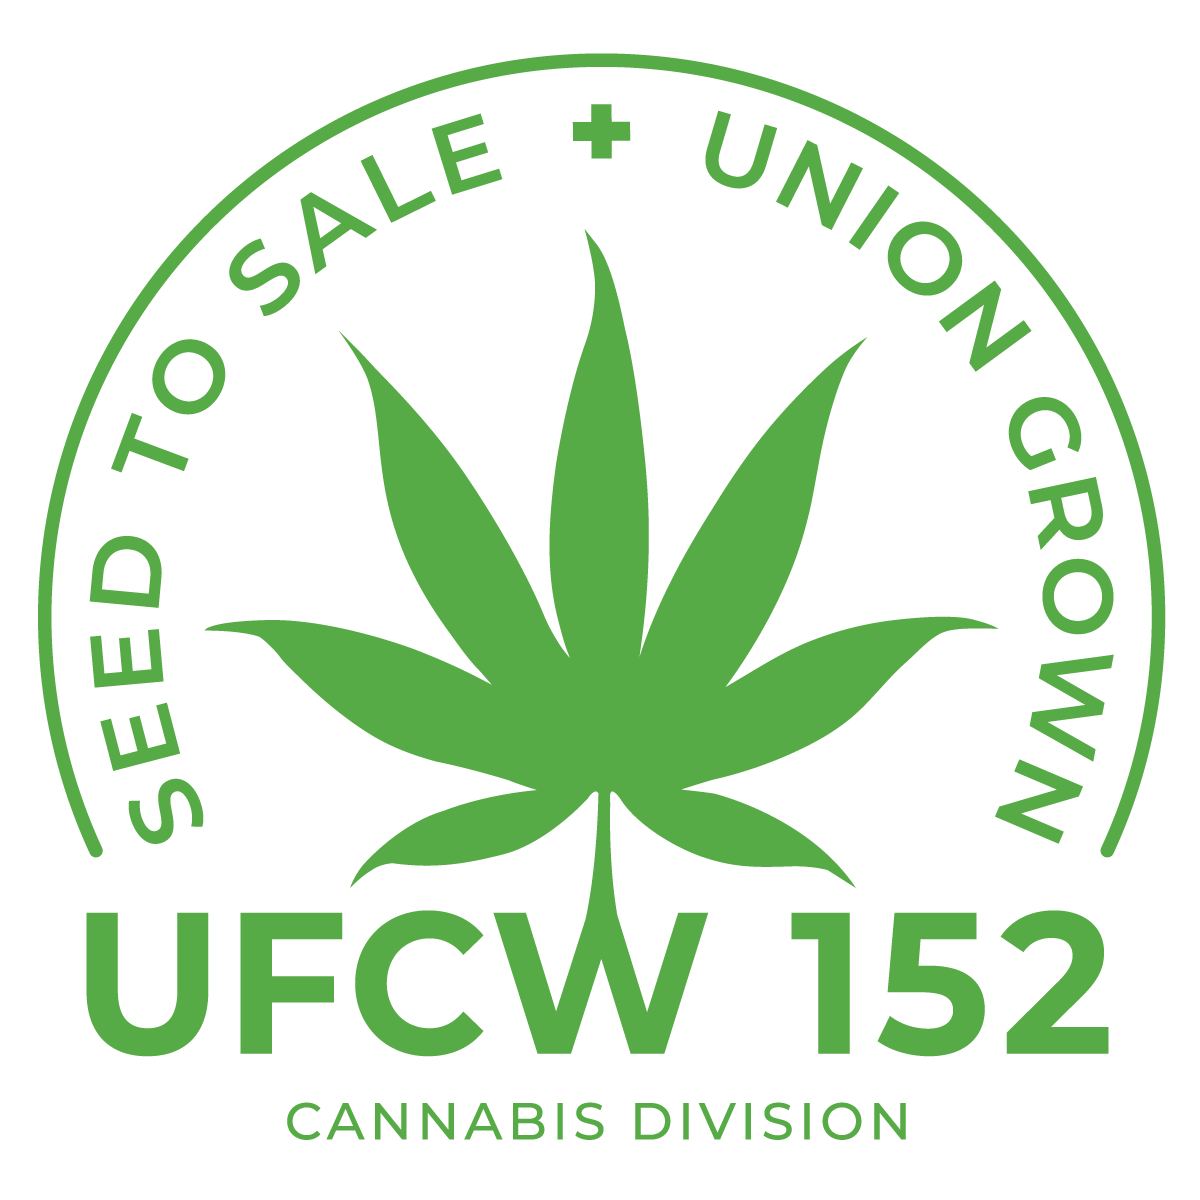 UFCW Local 152 Cannabis Division logo